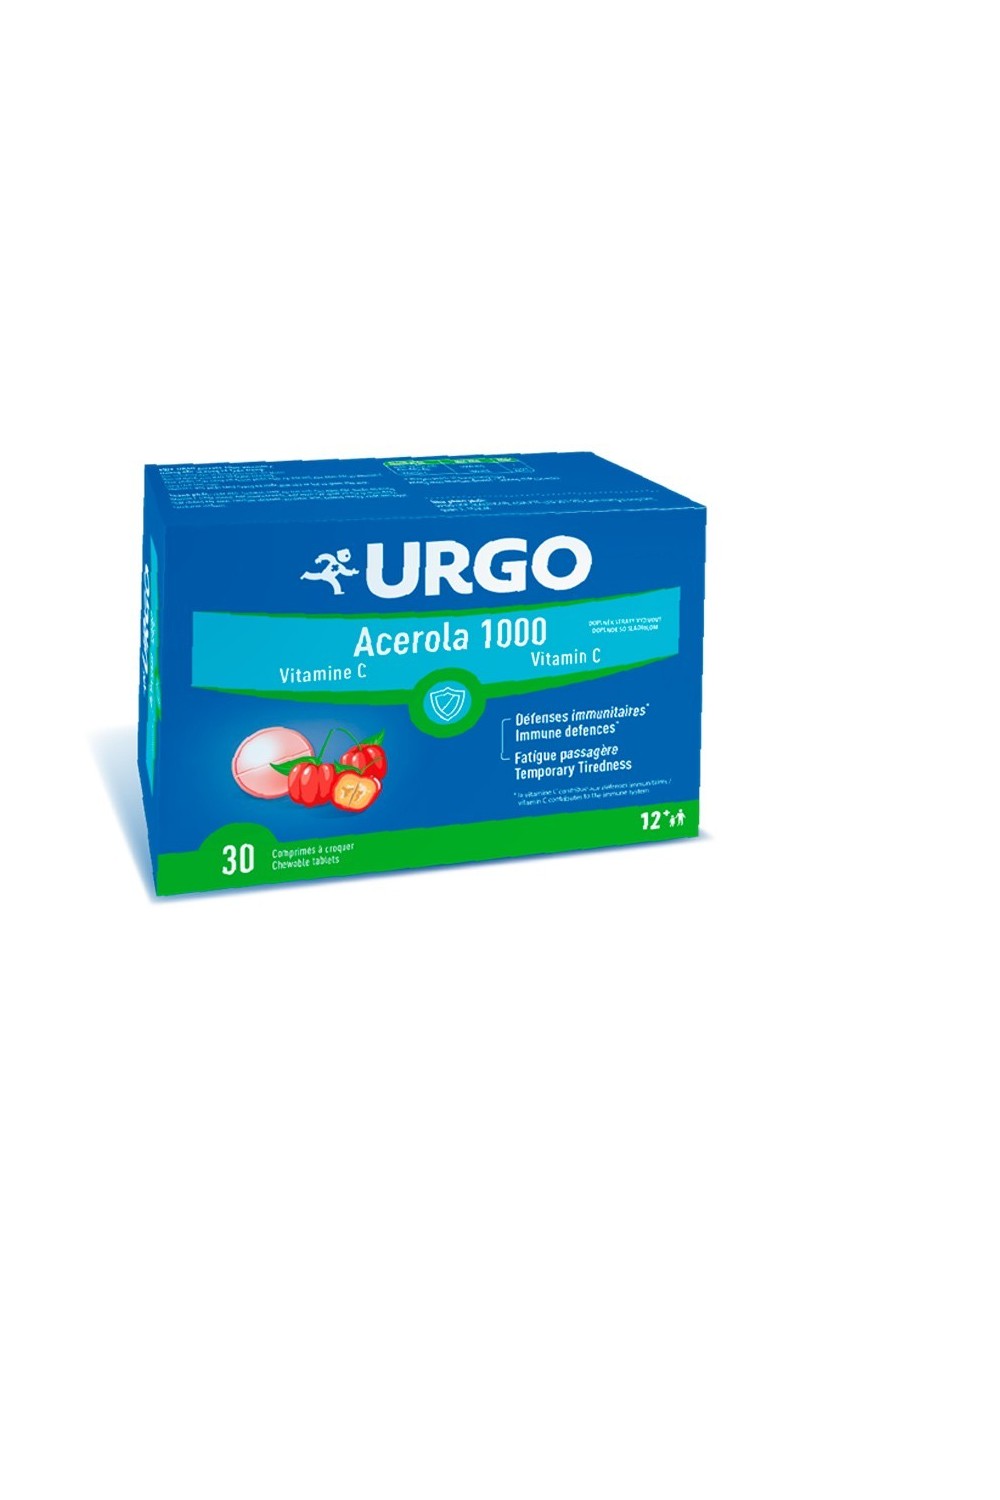 Urgo Acerola Vitamin C 30 Tablets